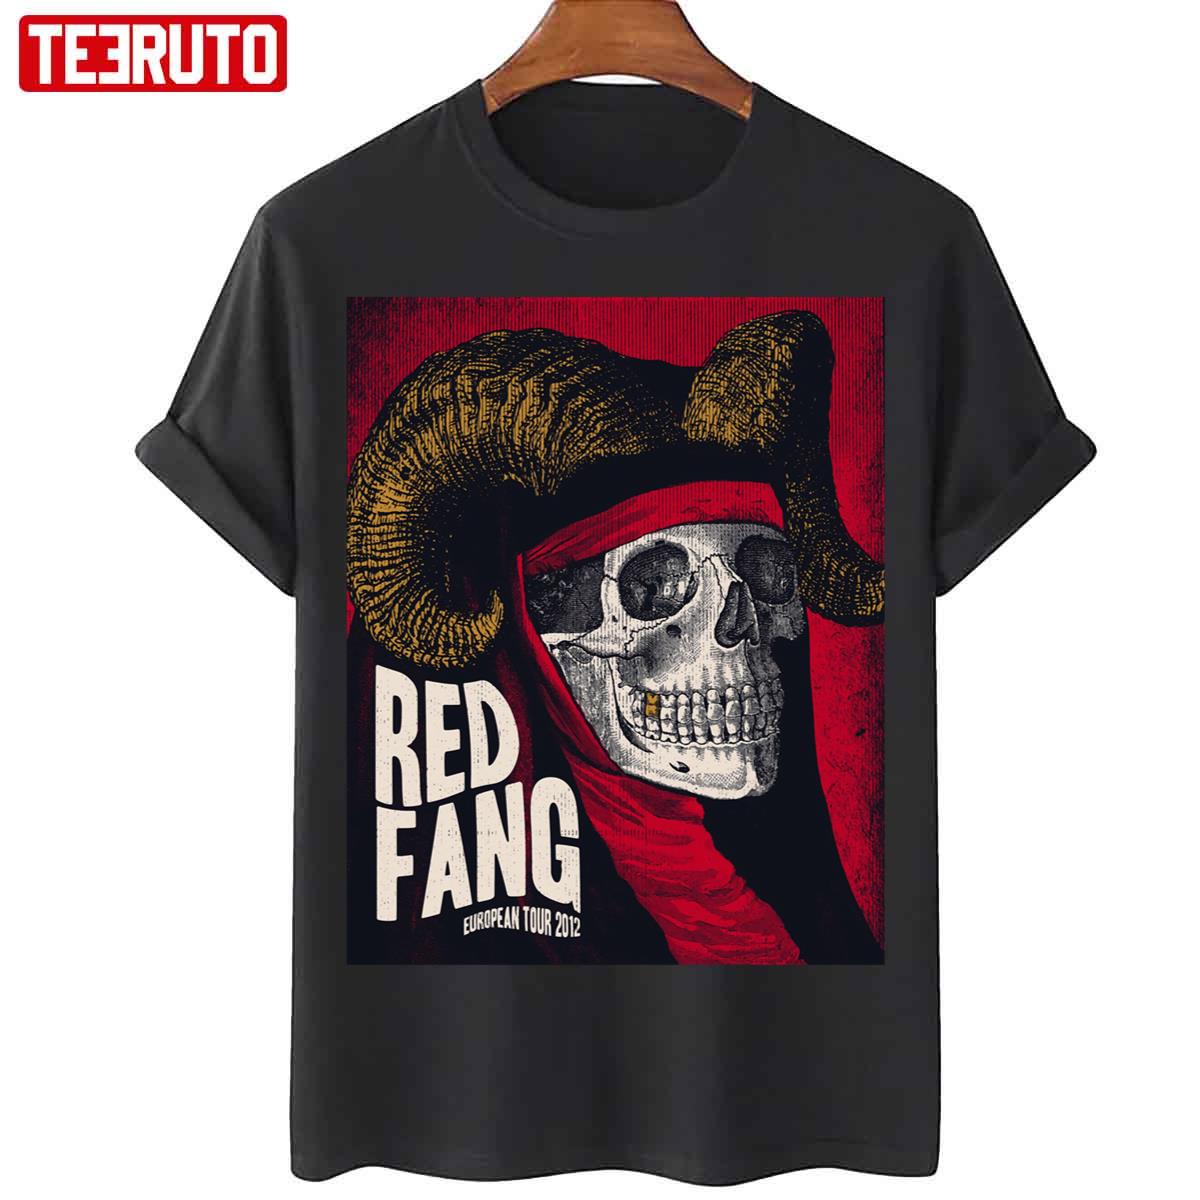 Antidote European Tour 2O12 Red Fang Unisex T Shirt